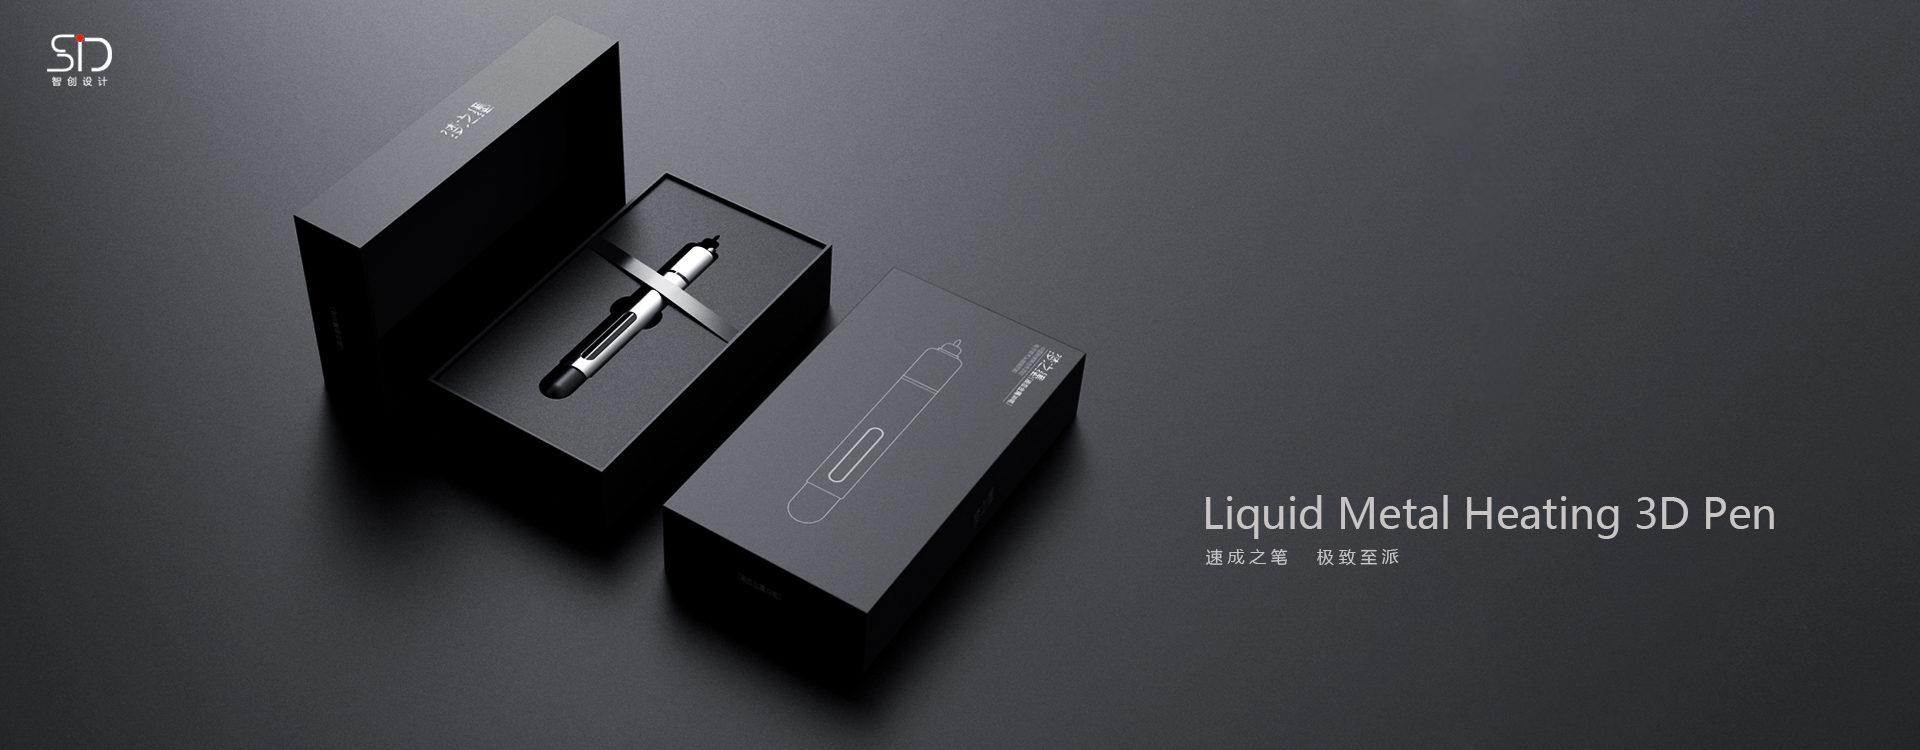 3D Liquid Metal Pen Package 包装设计